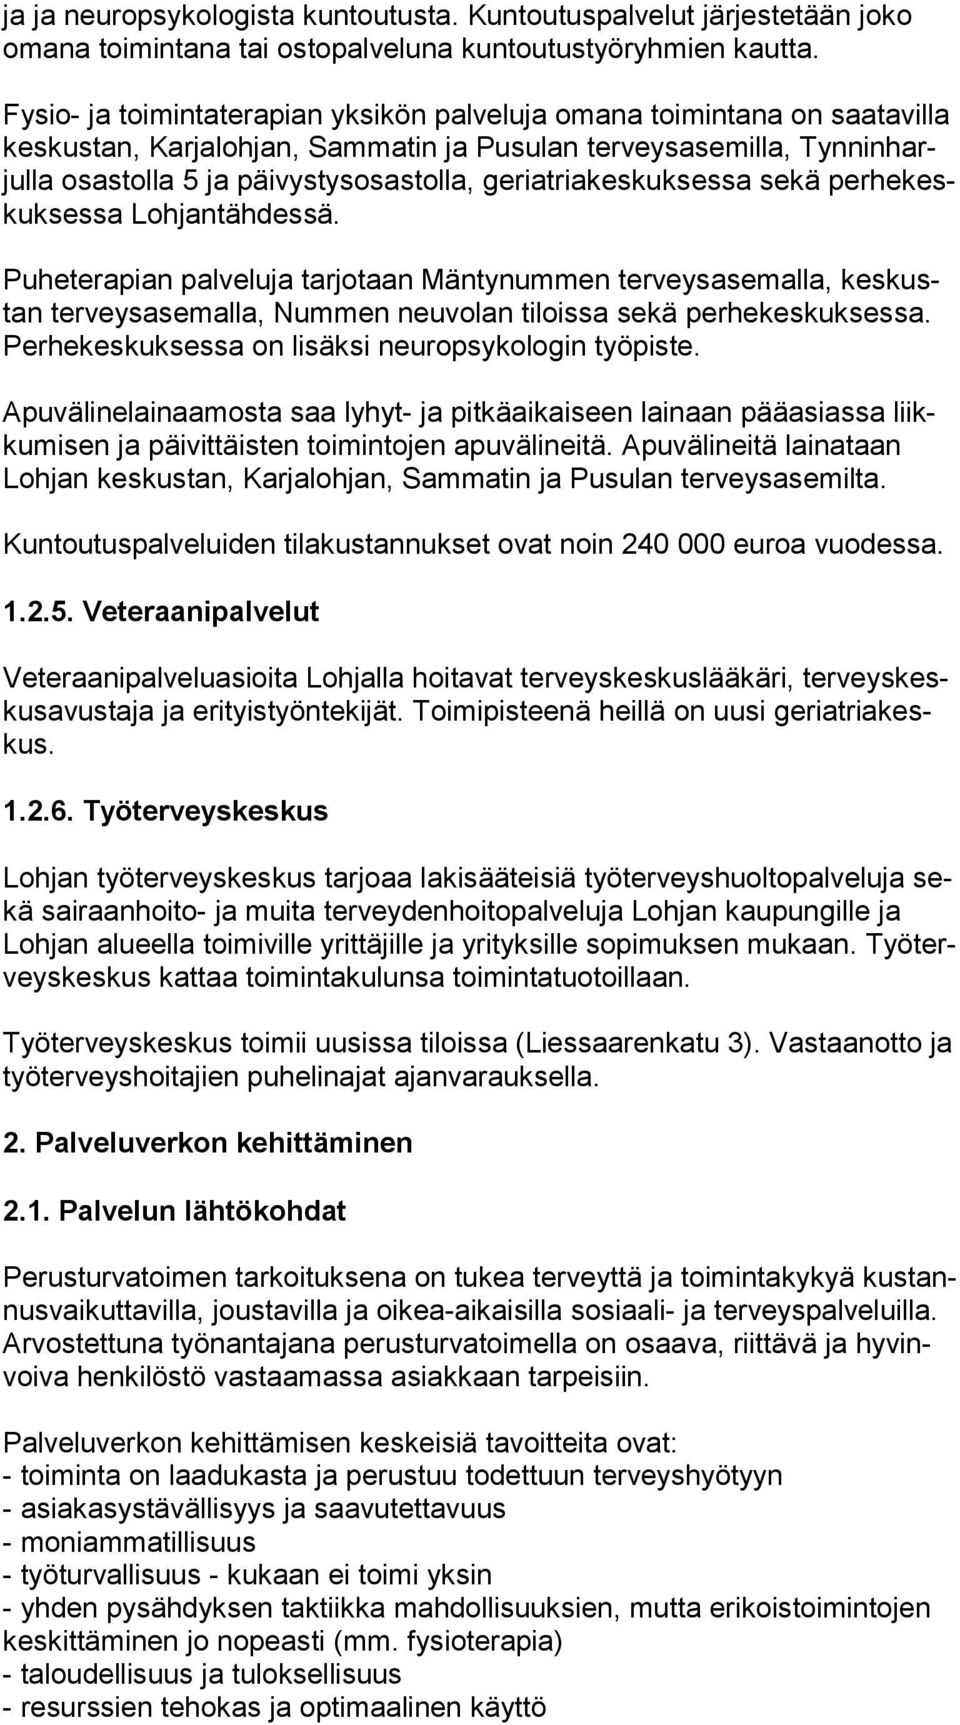 geriatriakeskuksessa sekä per he keskuk ses sa Lohjantähdessä. Puheterapian palveluja tarjotaan Mäntynummen terveysasemalla, kes kustan terveysasemalla, Nummen neuvolan tiloissa sekä perhekeskuksessa.